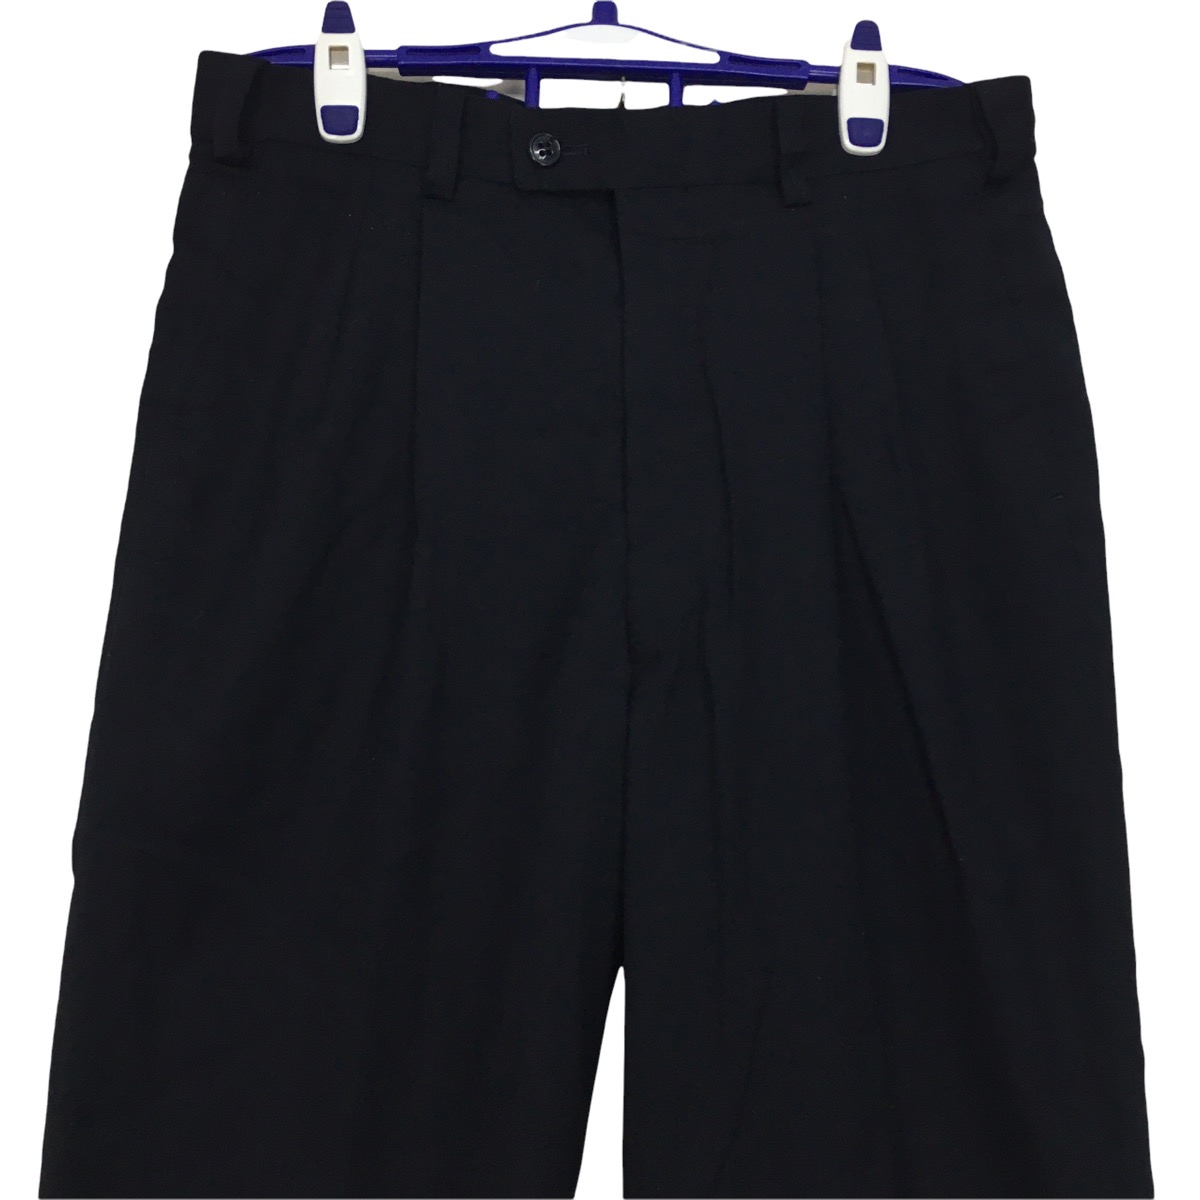 LANVIN CLASSIQUE Stretch Waist Long Pants Trousers Formal - 2